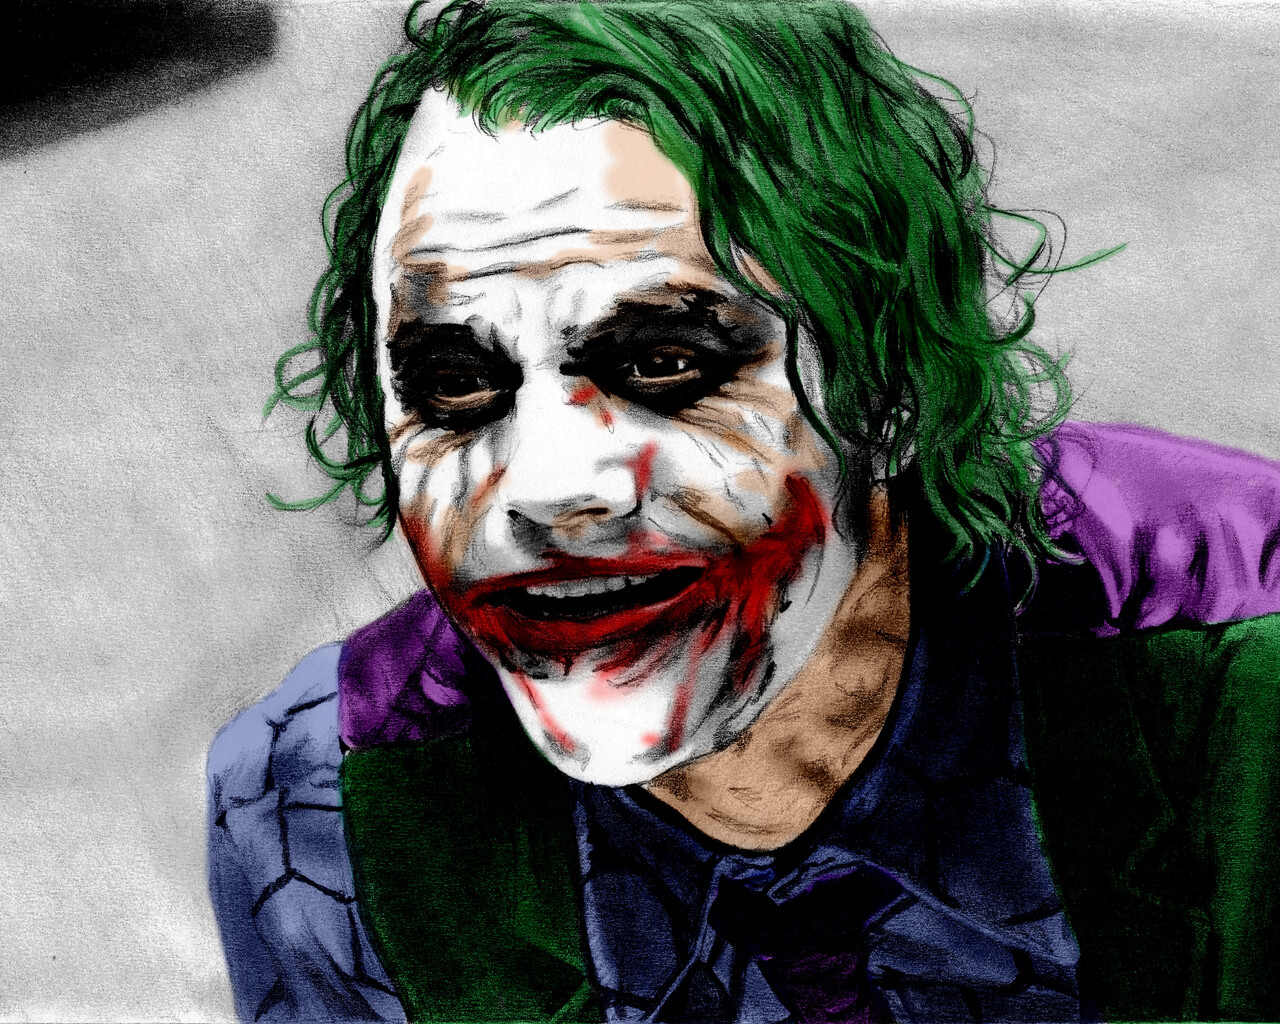 Joker Portrait Wallpapers - Wallpaper Cave